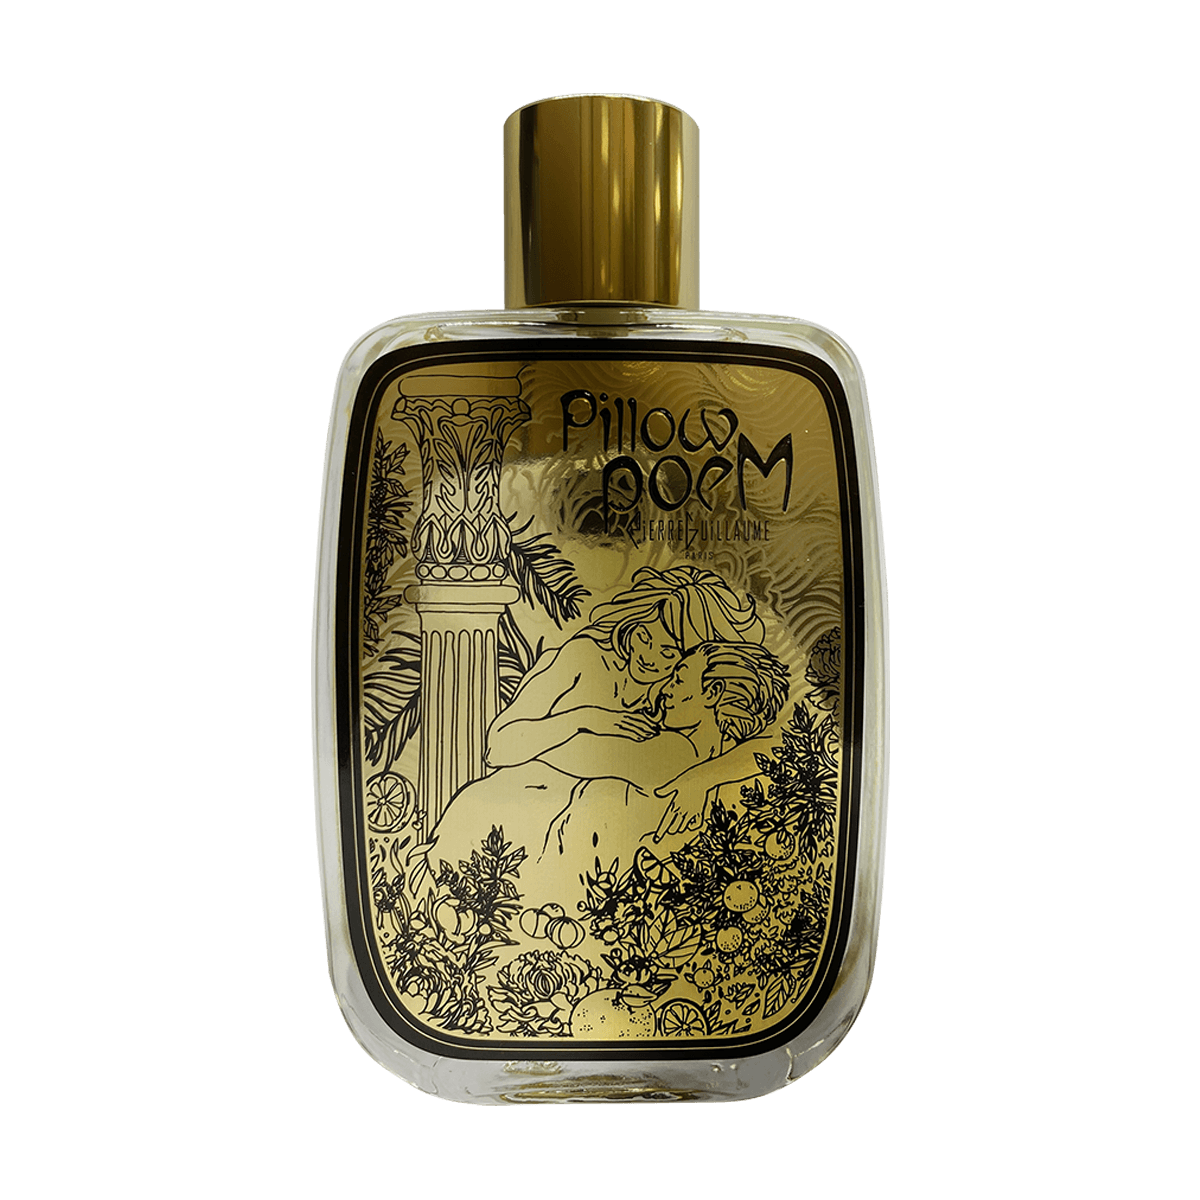 Pierre Guillaume Paris - Pillowpoem | Perfume Lounge